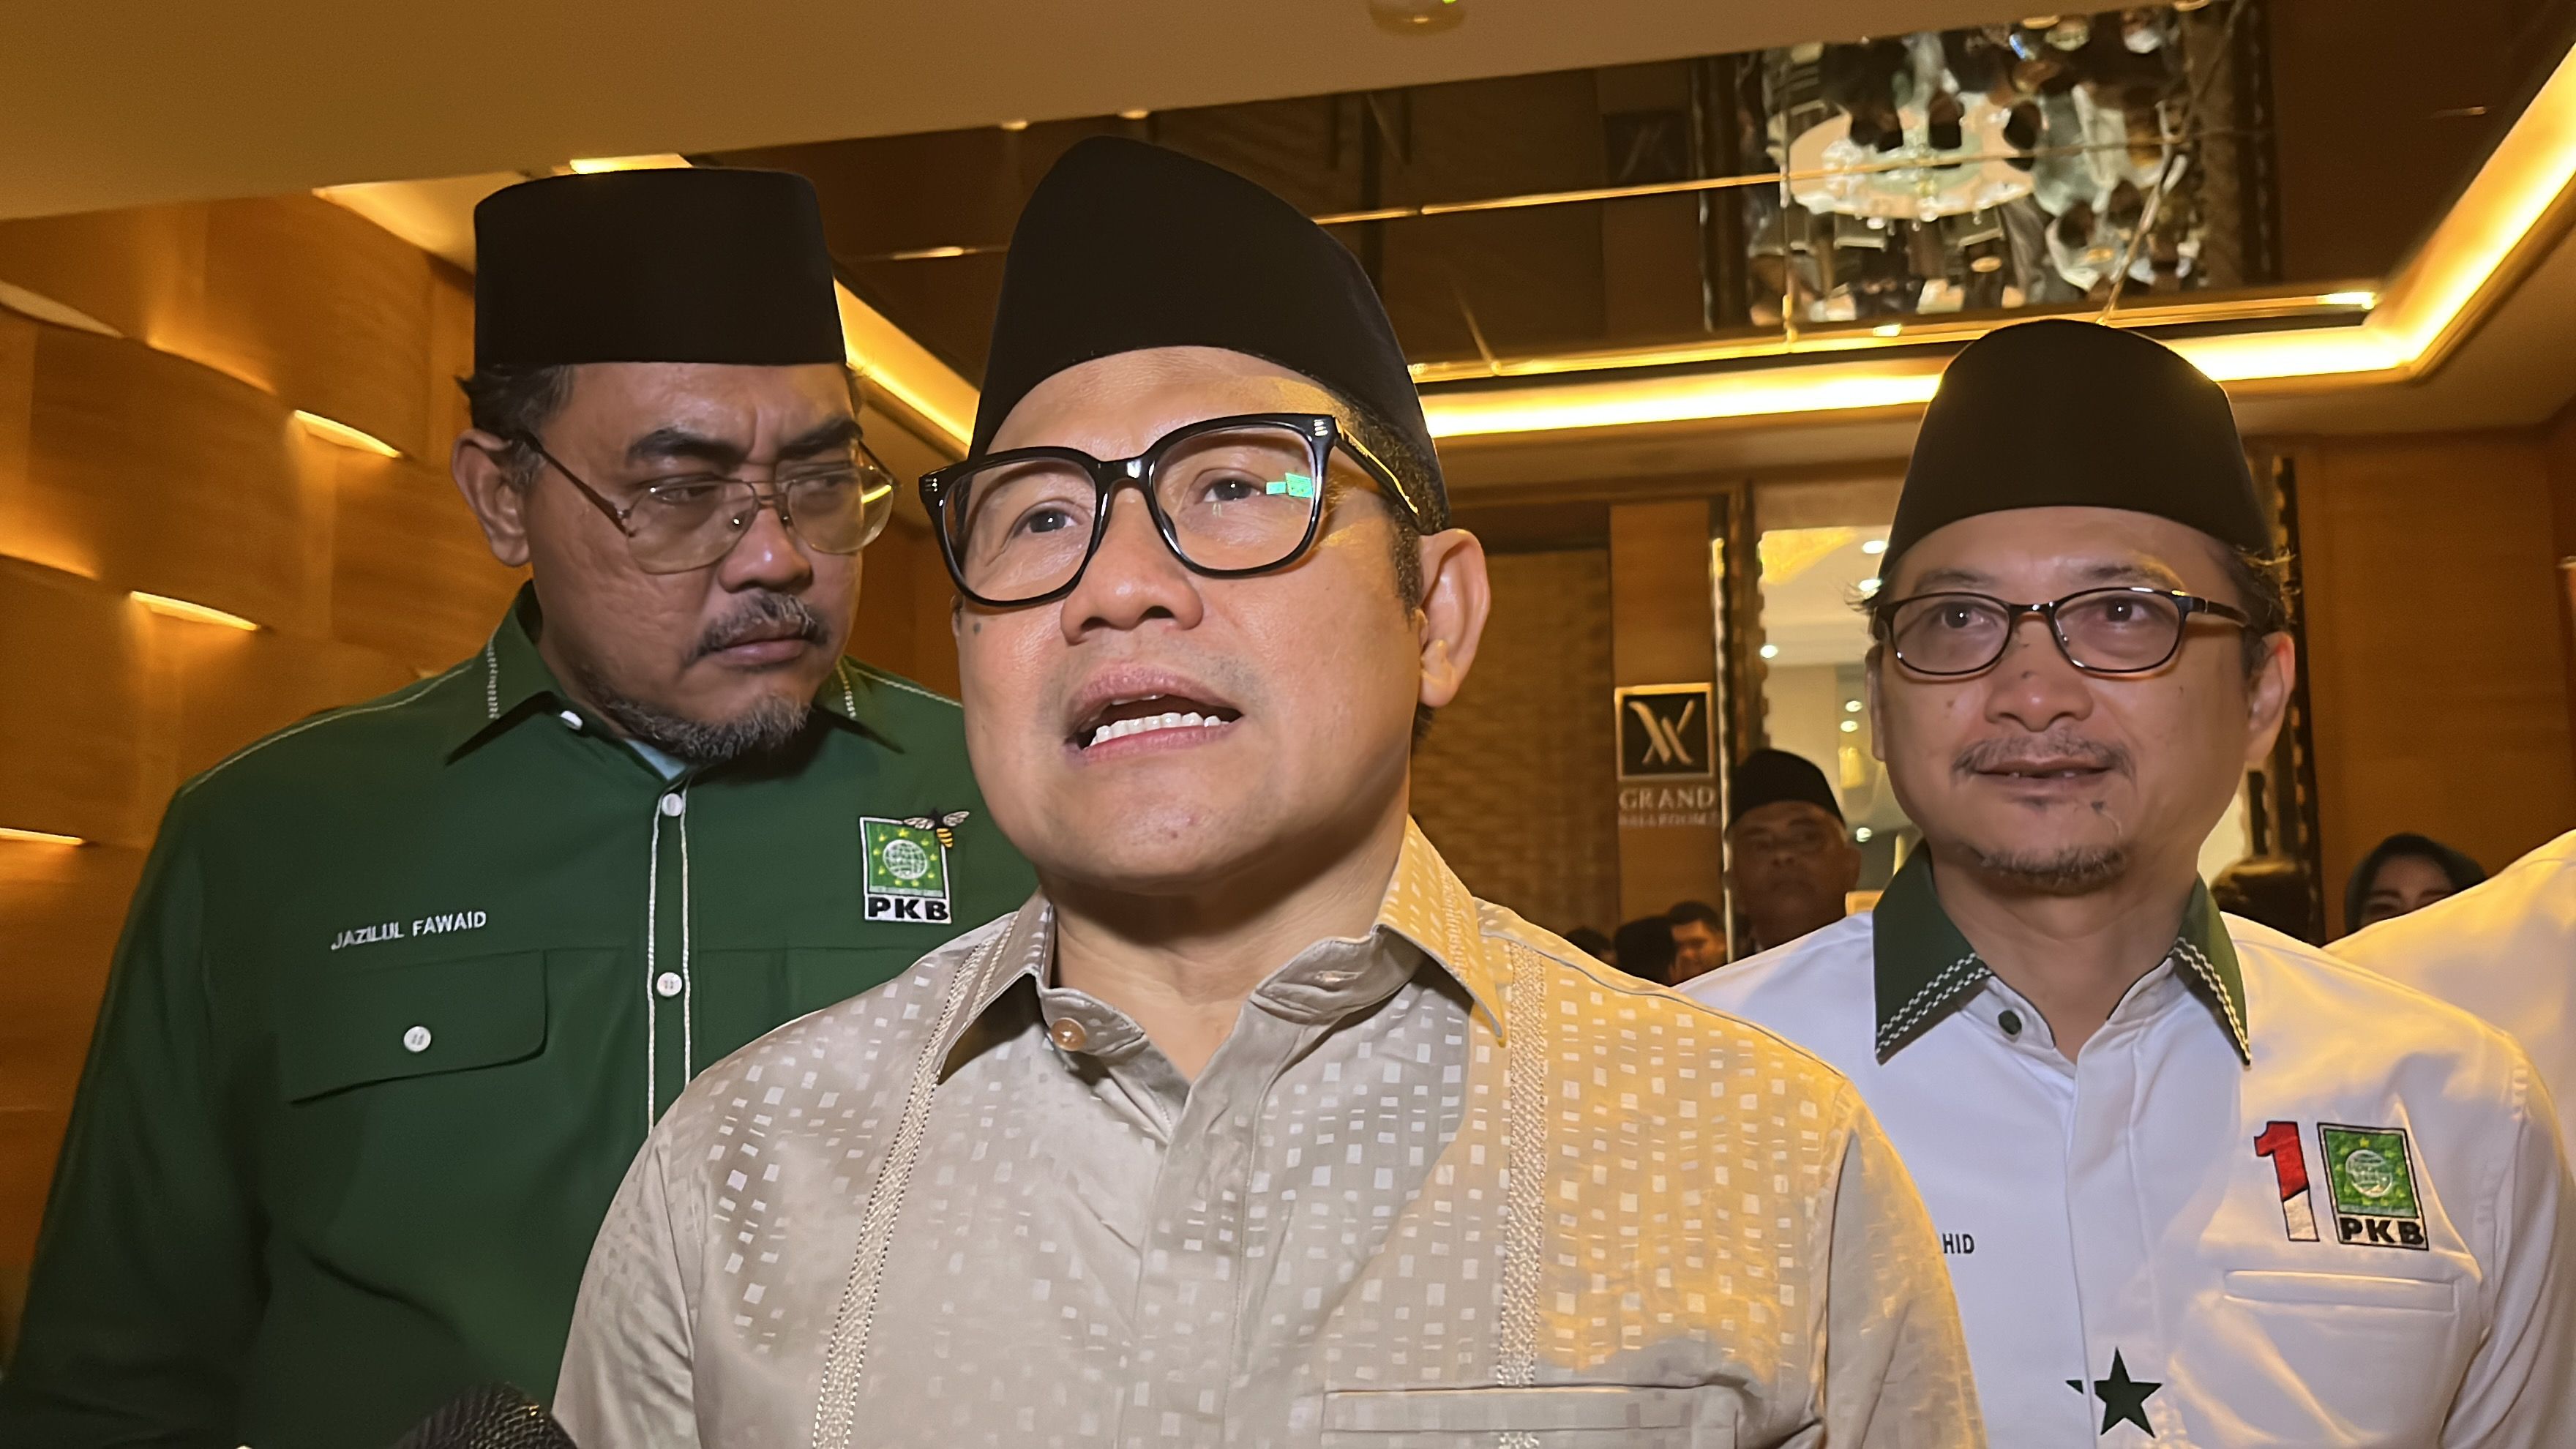 Bupati Sidoarjo Berulang Kali Terjerat Korupsi, Cak Imin Peringatkan Calon Kepala Daerah Tak Main-main